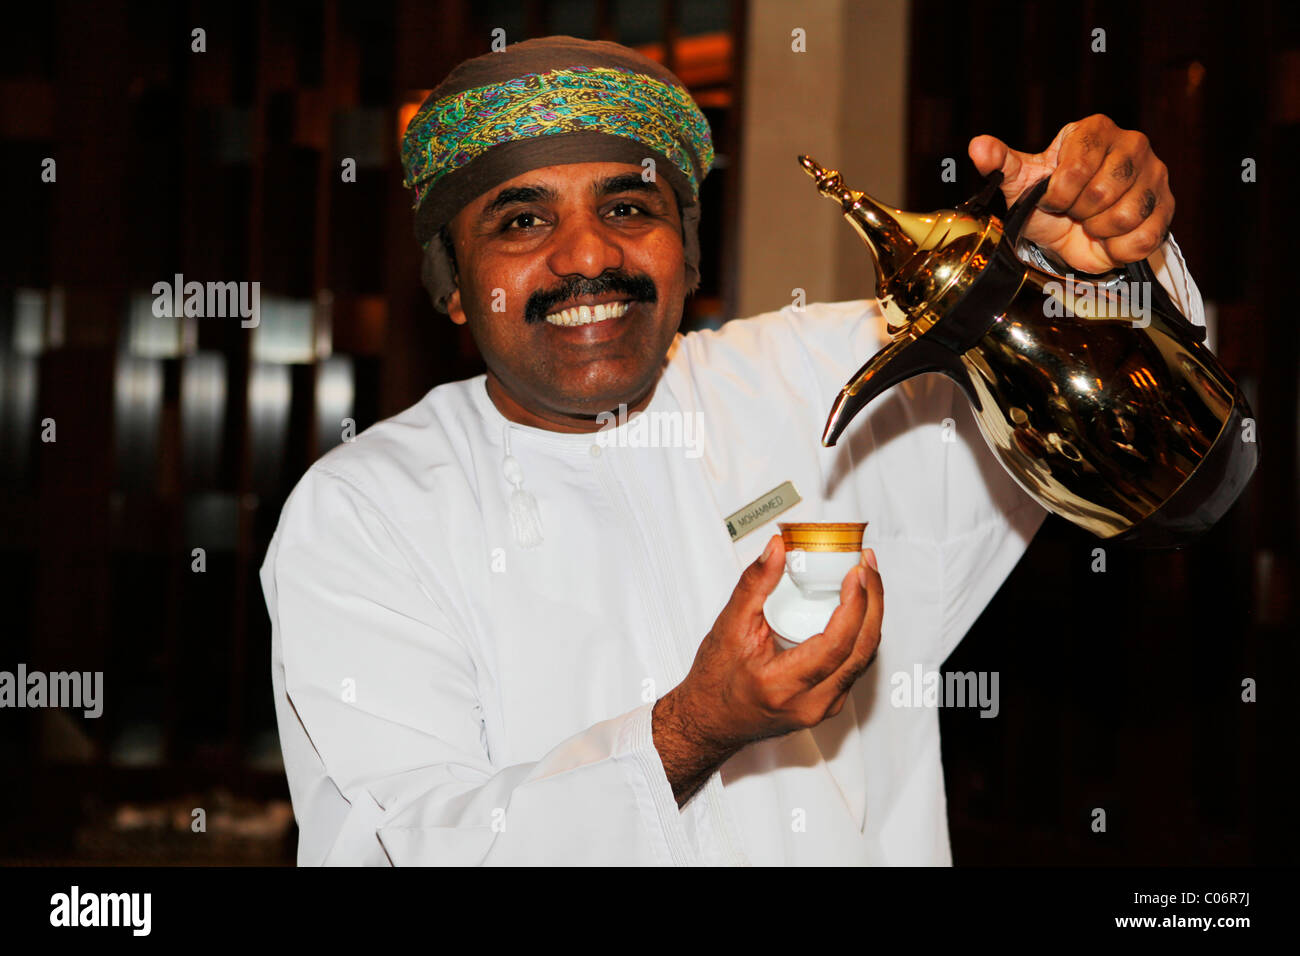 Un homme sert un pot de café arabe connue sous le nom de Dallah à Muscat, Oman. Banque D'Images